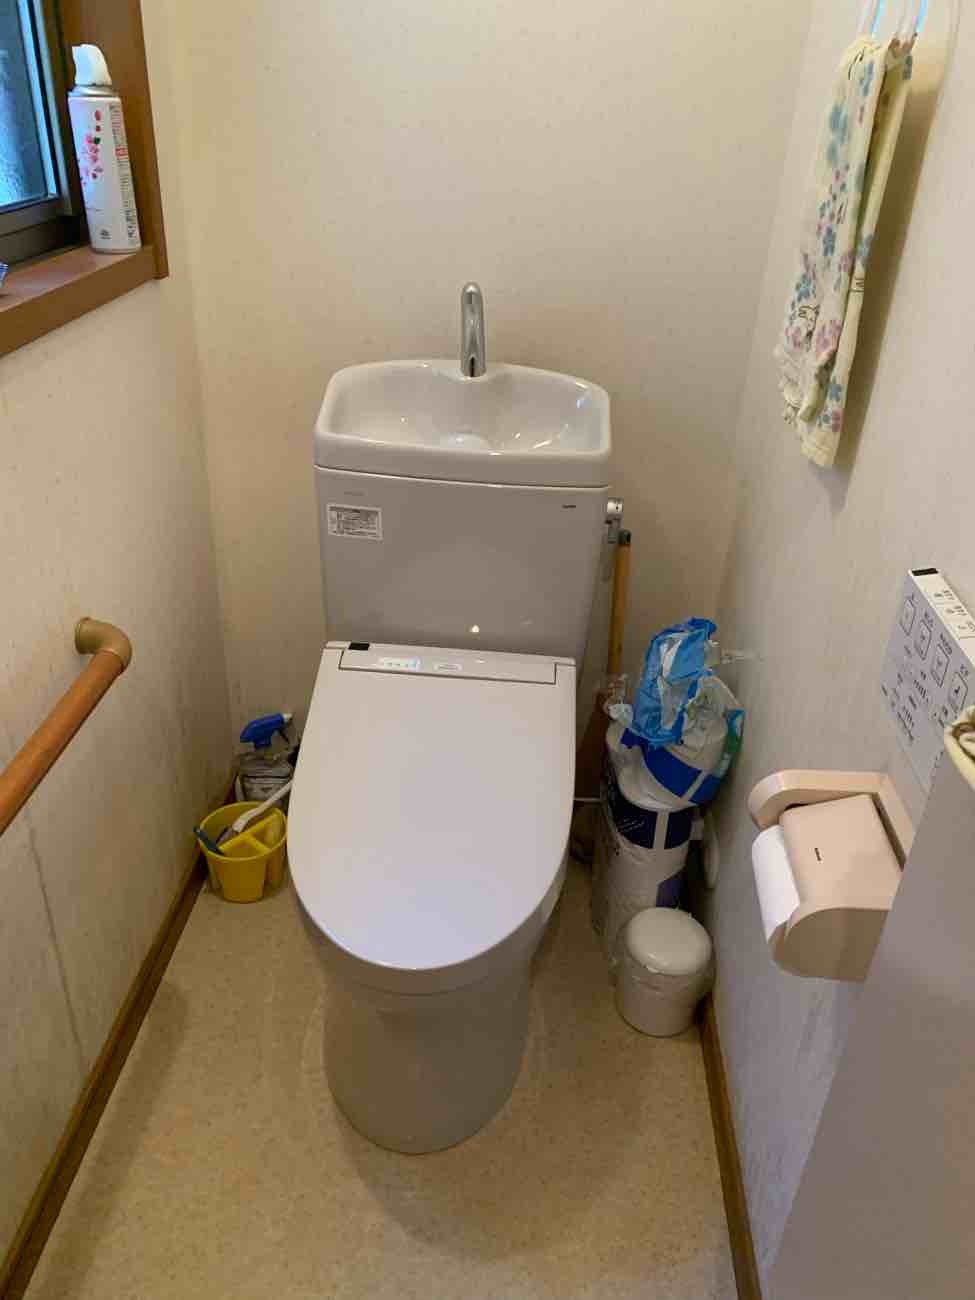 【埼玉県吉川市】Y様邸トイレ2台交換工事が完了しました。TOTOピュアレストQR 画像